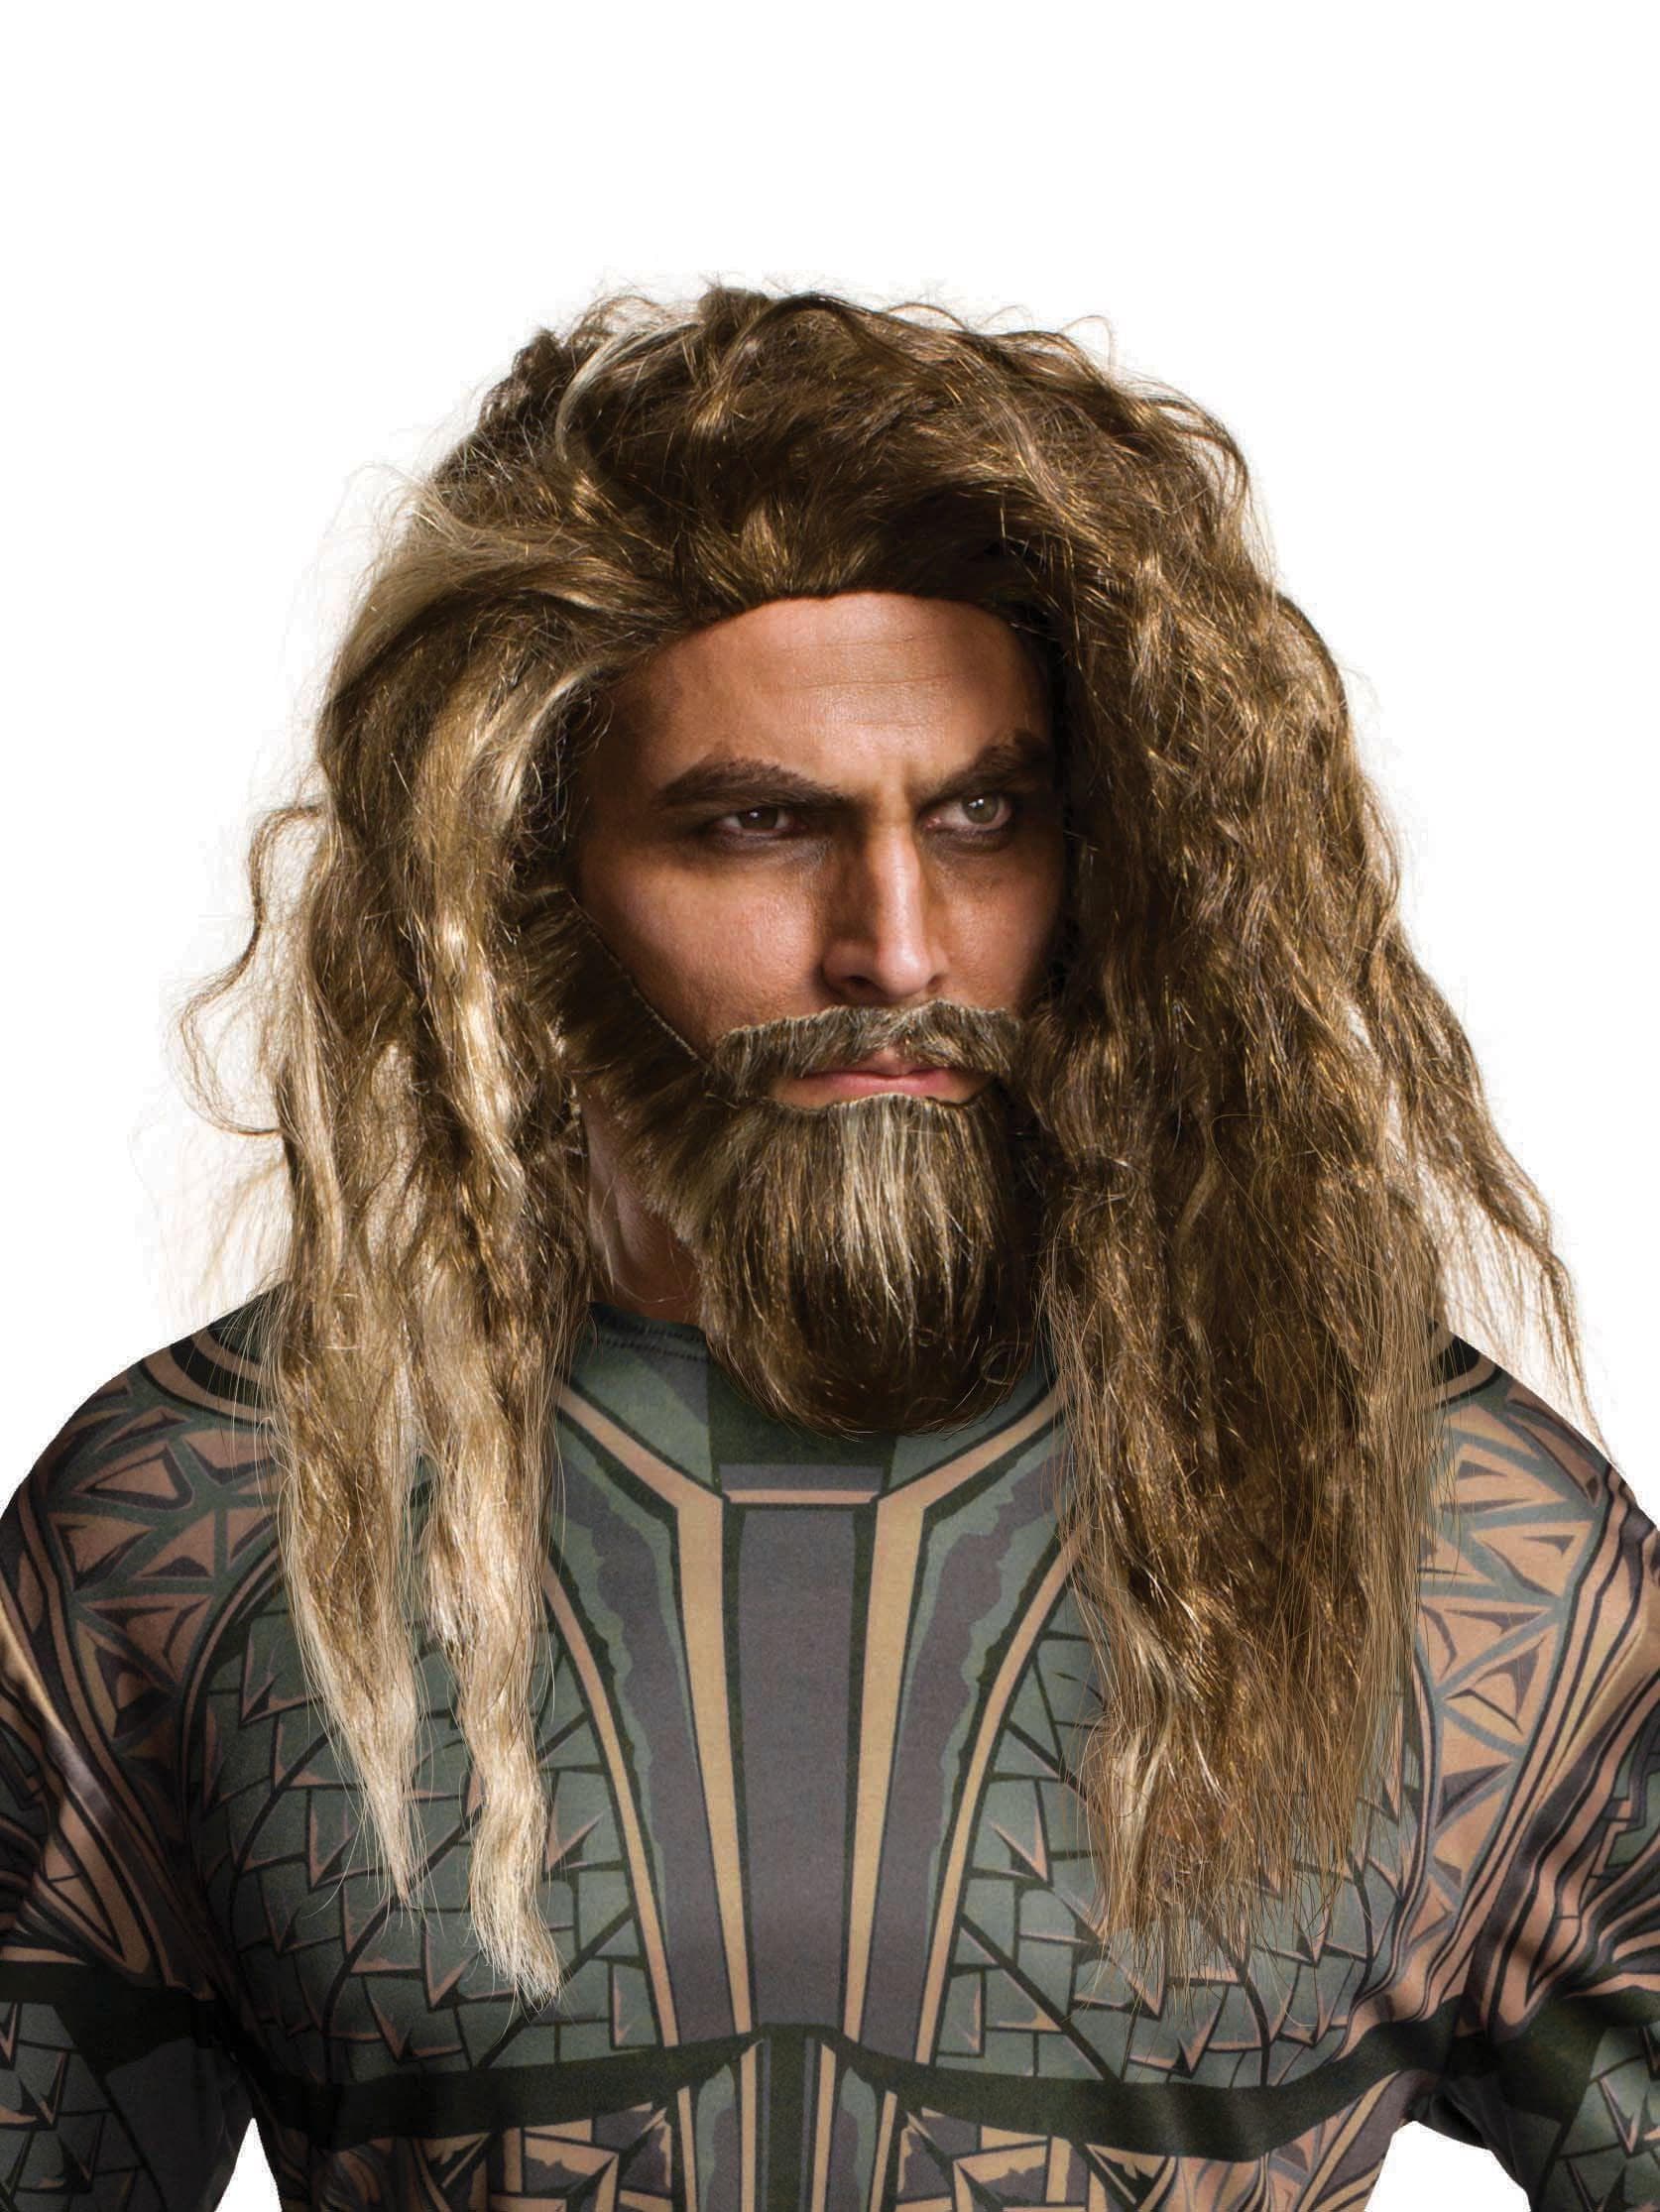 Men's Justice League Aqua Man Beard and Wig - costumes.com